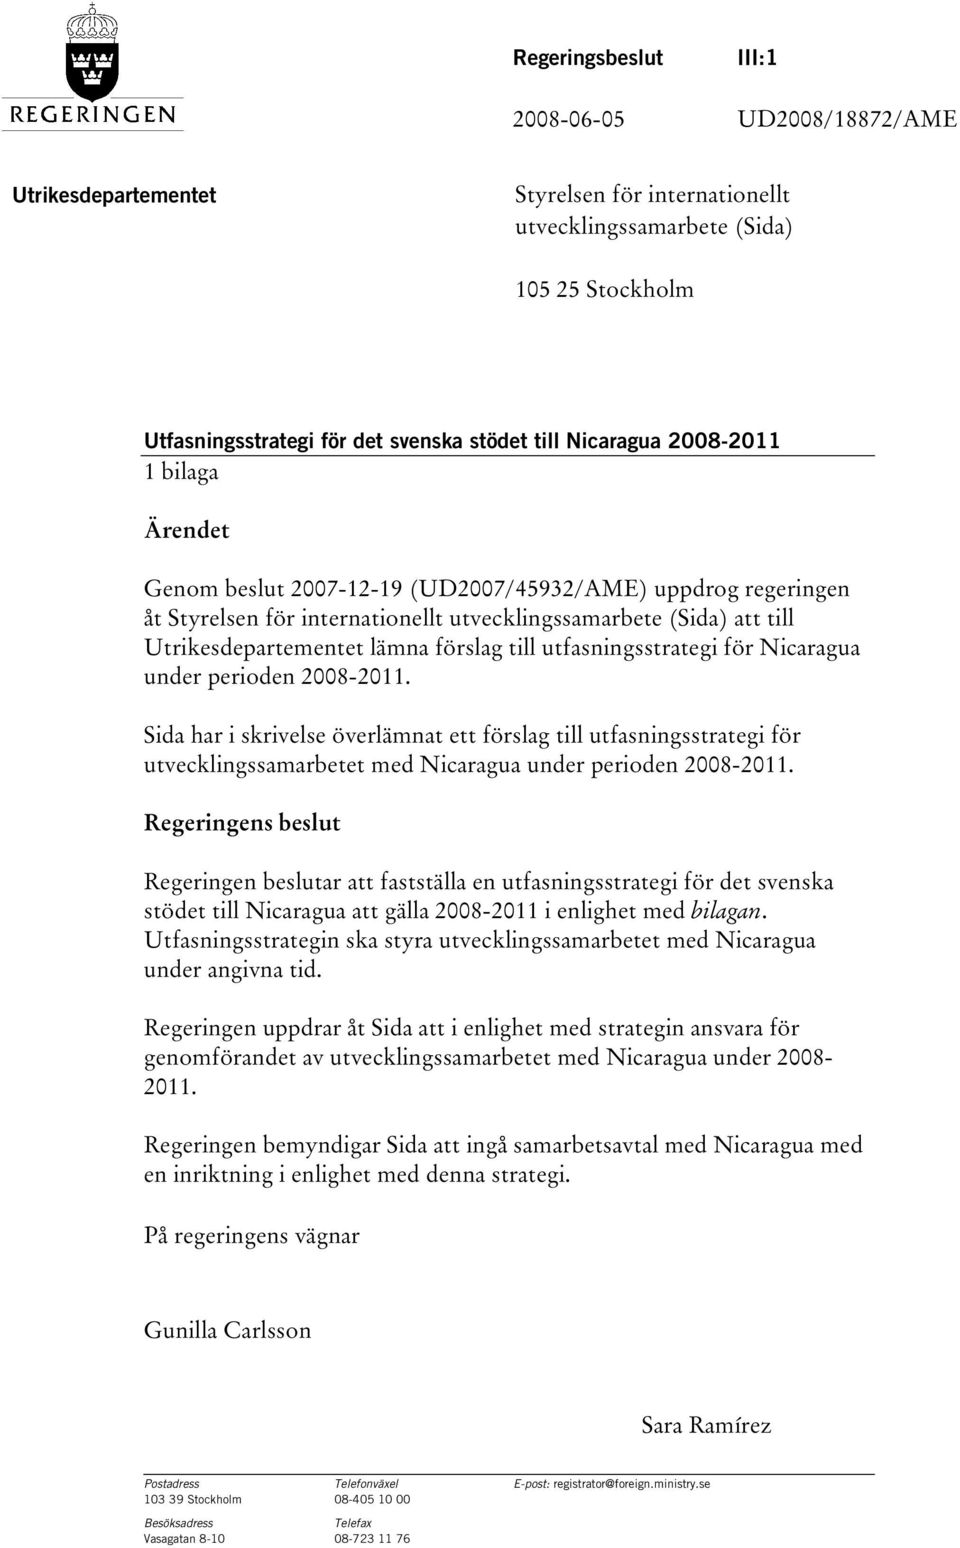 utfasningsstrategi för Nicaragua under perioden 2008-2011. Sida har i skrivelse överlämnat ett förslag till utfasningsstrategi för utvecklingssamarbetet med Nicaragua under perioden 2008-2011.